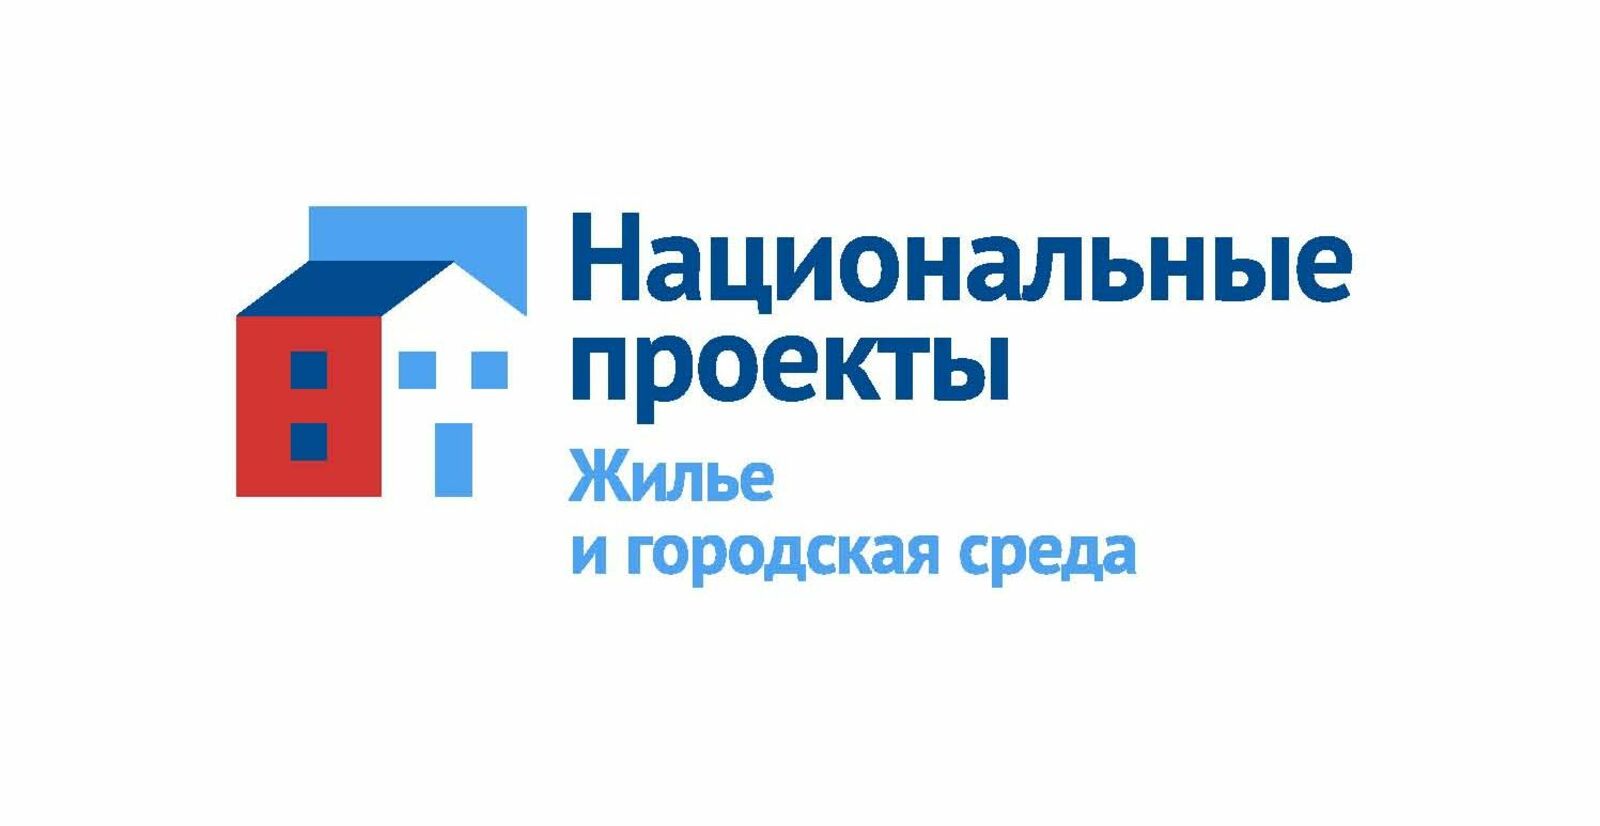 В Башкортостане реализуют инфраструктурные проекты в двух городах